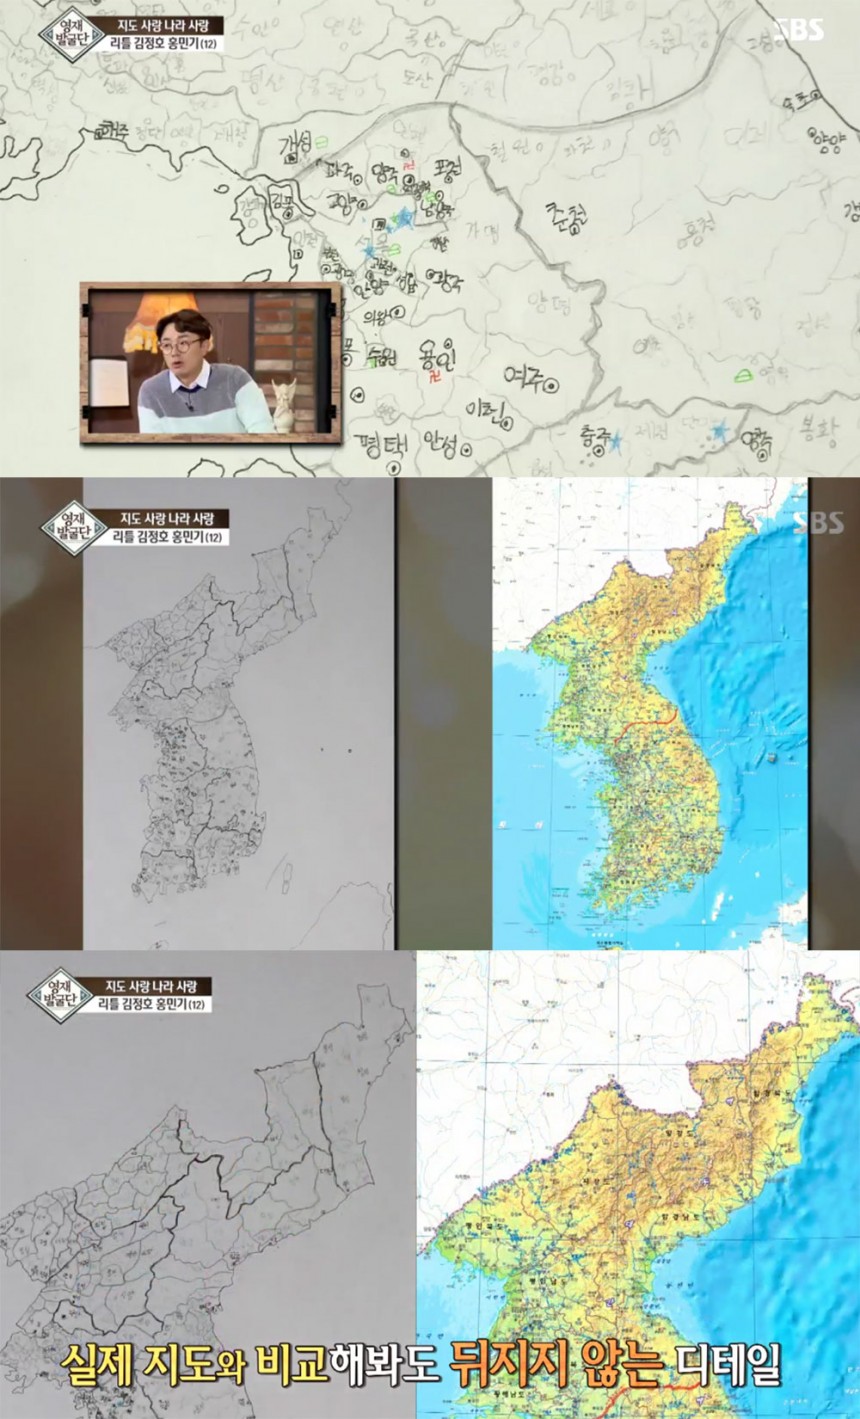 ‘영재 발굴단’ 방송 화면 / SBS ‘영재 발굴단’ 방송 캡처